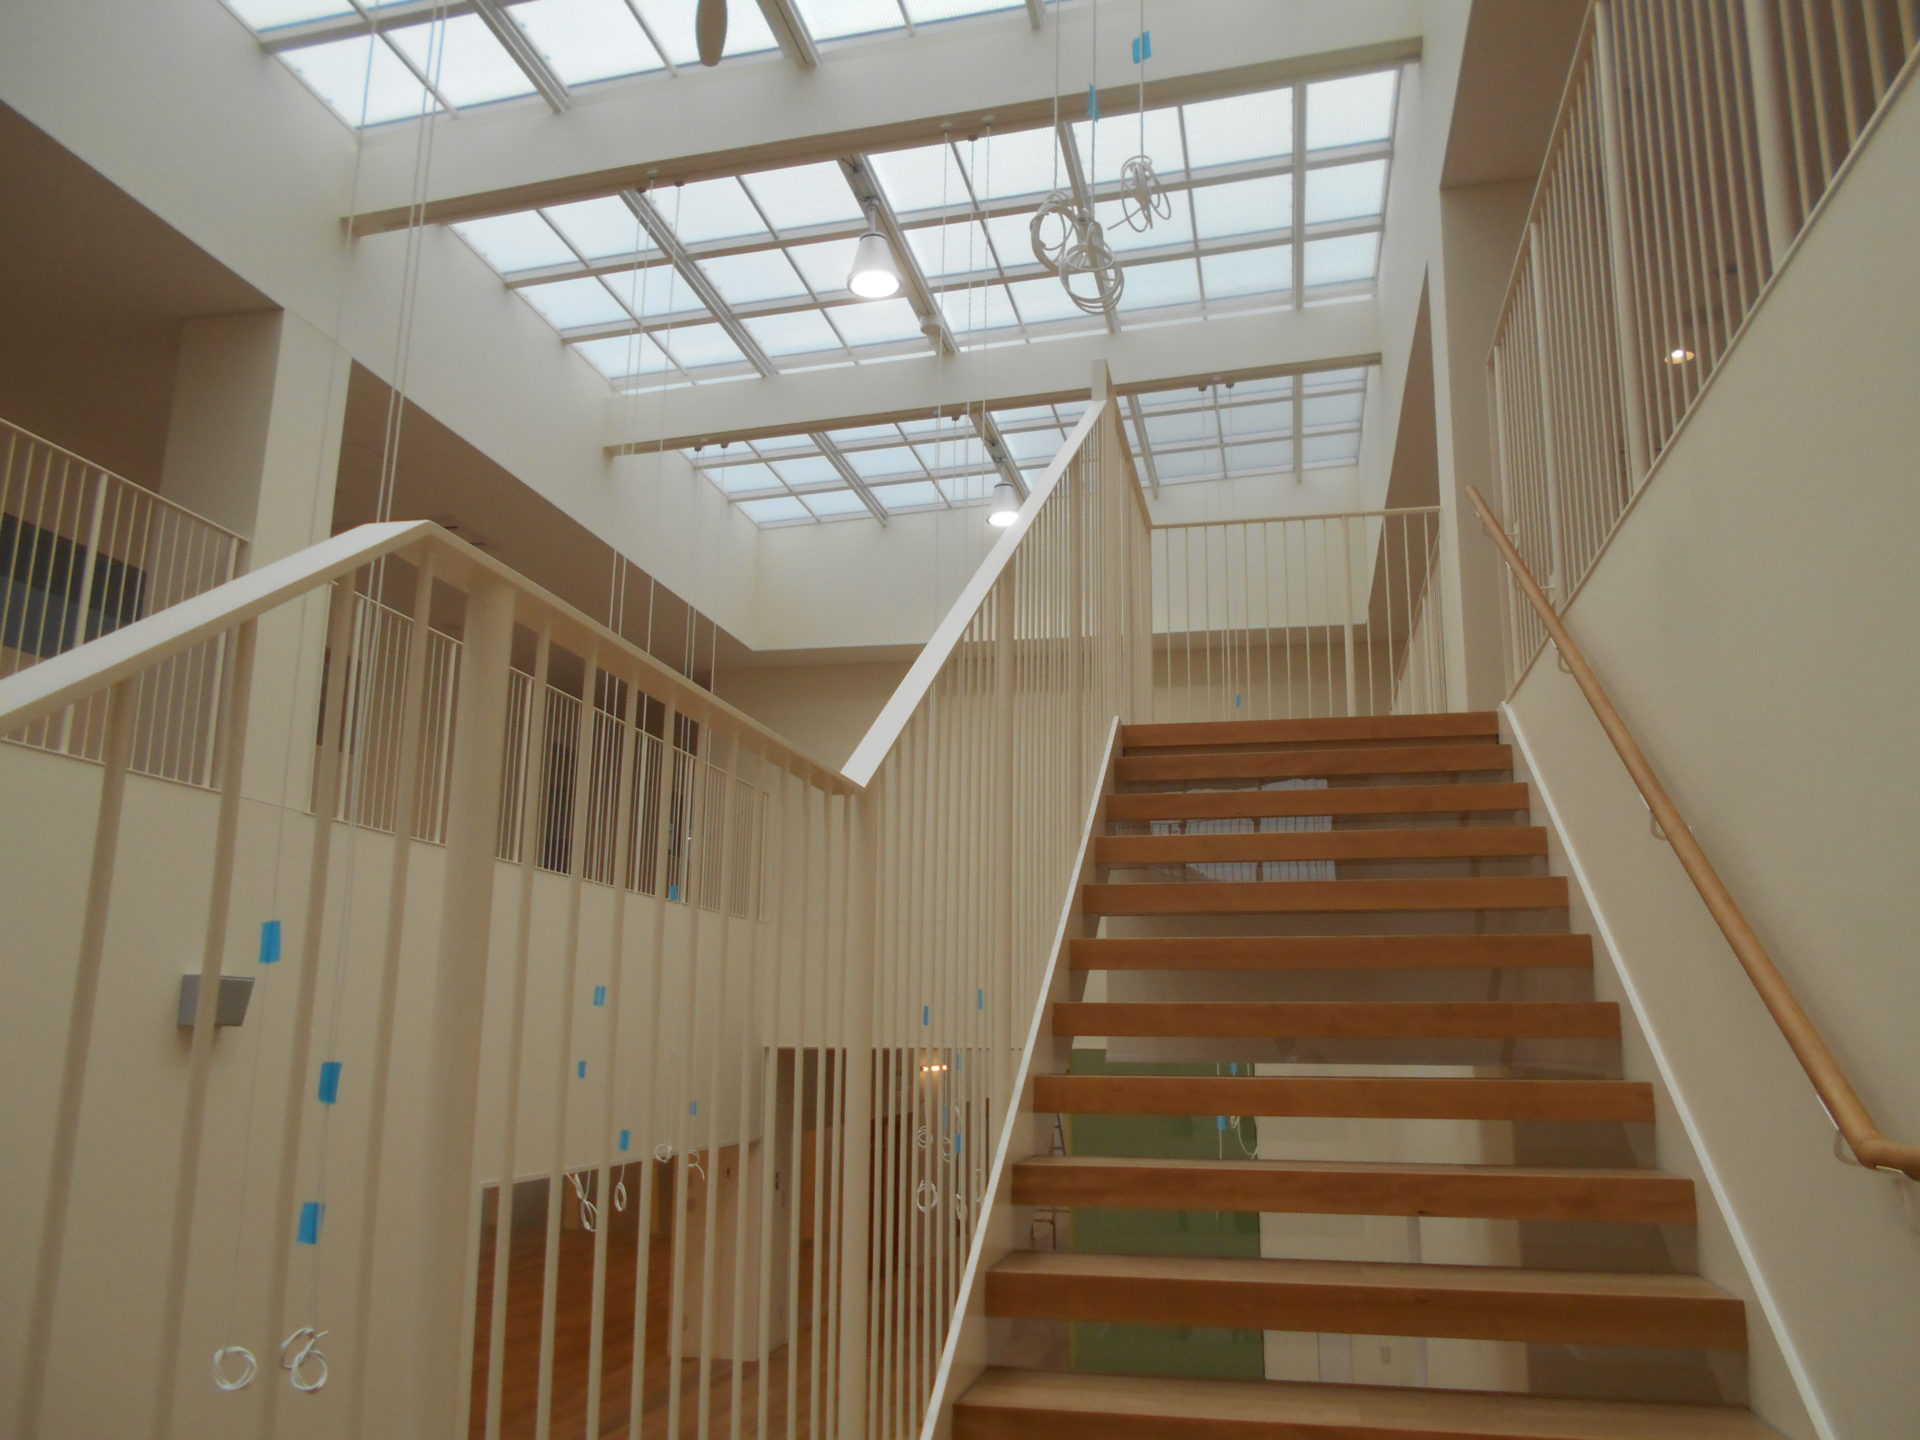 認定こども園釜井台幼稚園の設計事務所検査におけるホール階段と天井の写真